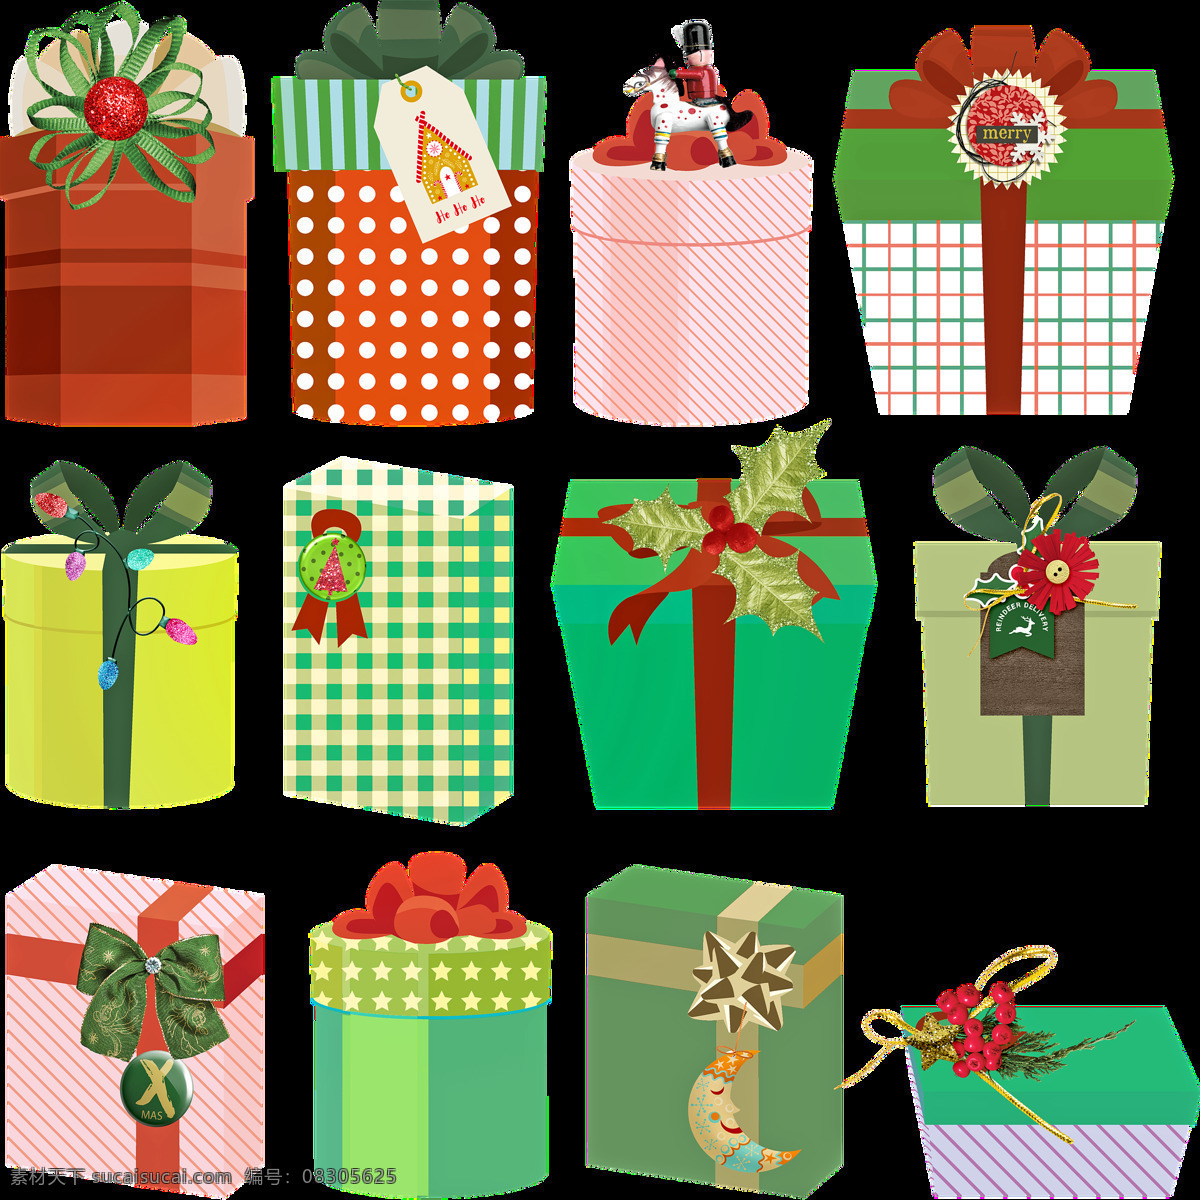 圣诞礼物 礼物 圣诞节 庆典 礼品 红色 色带 盒 卡通设计